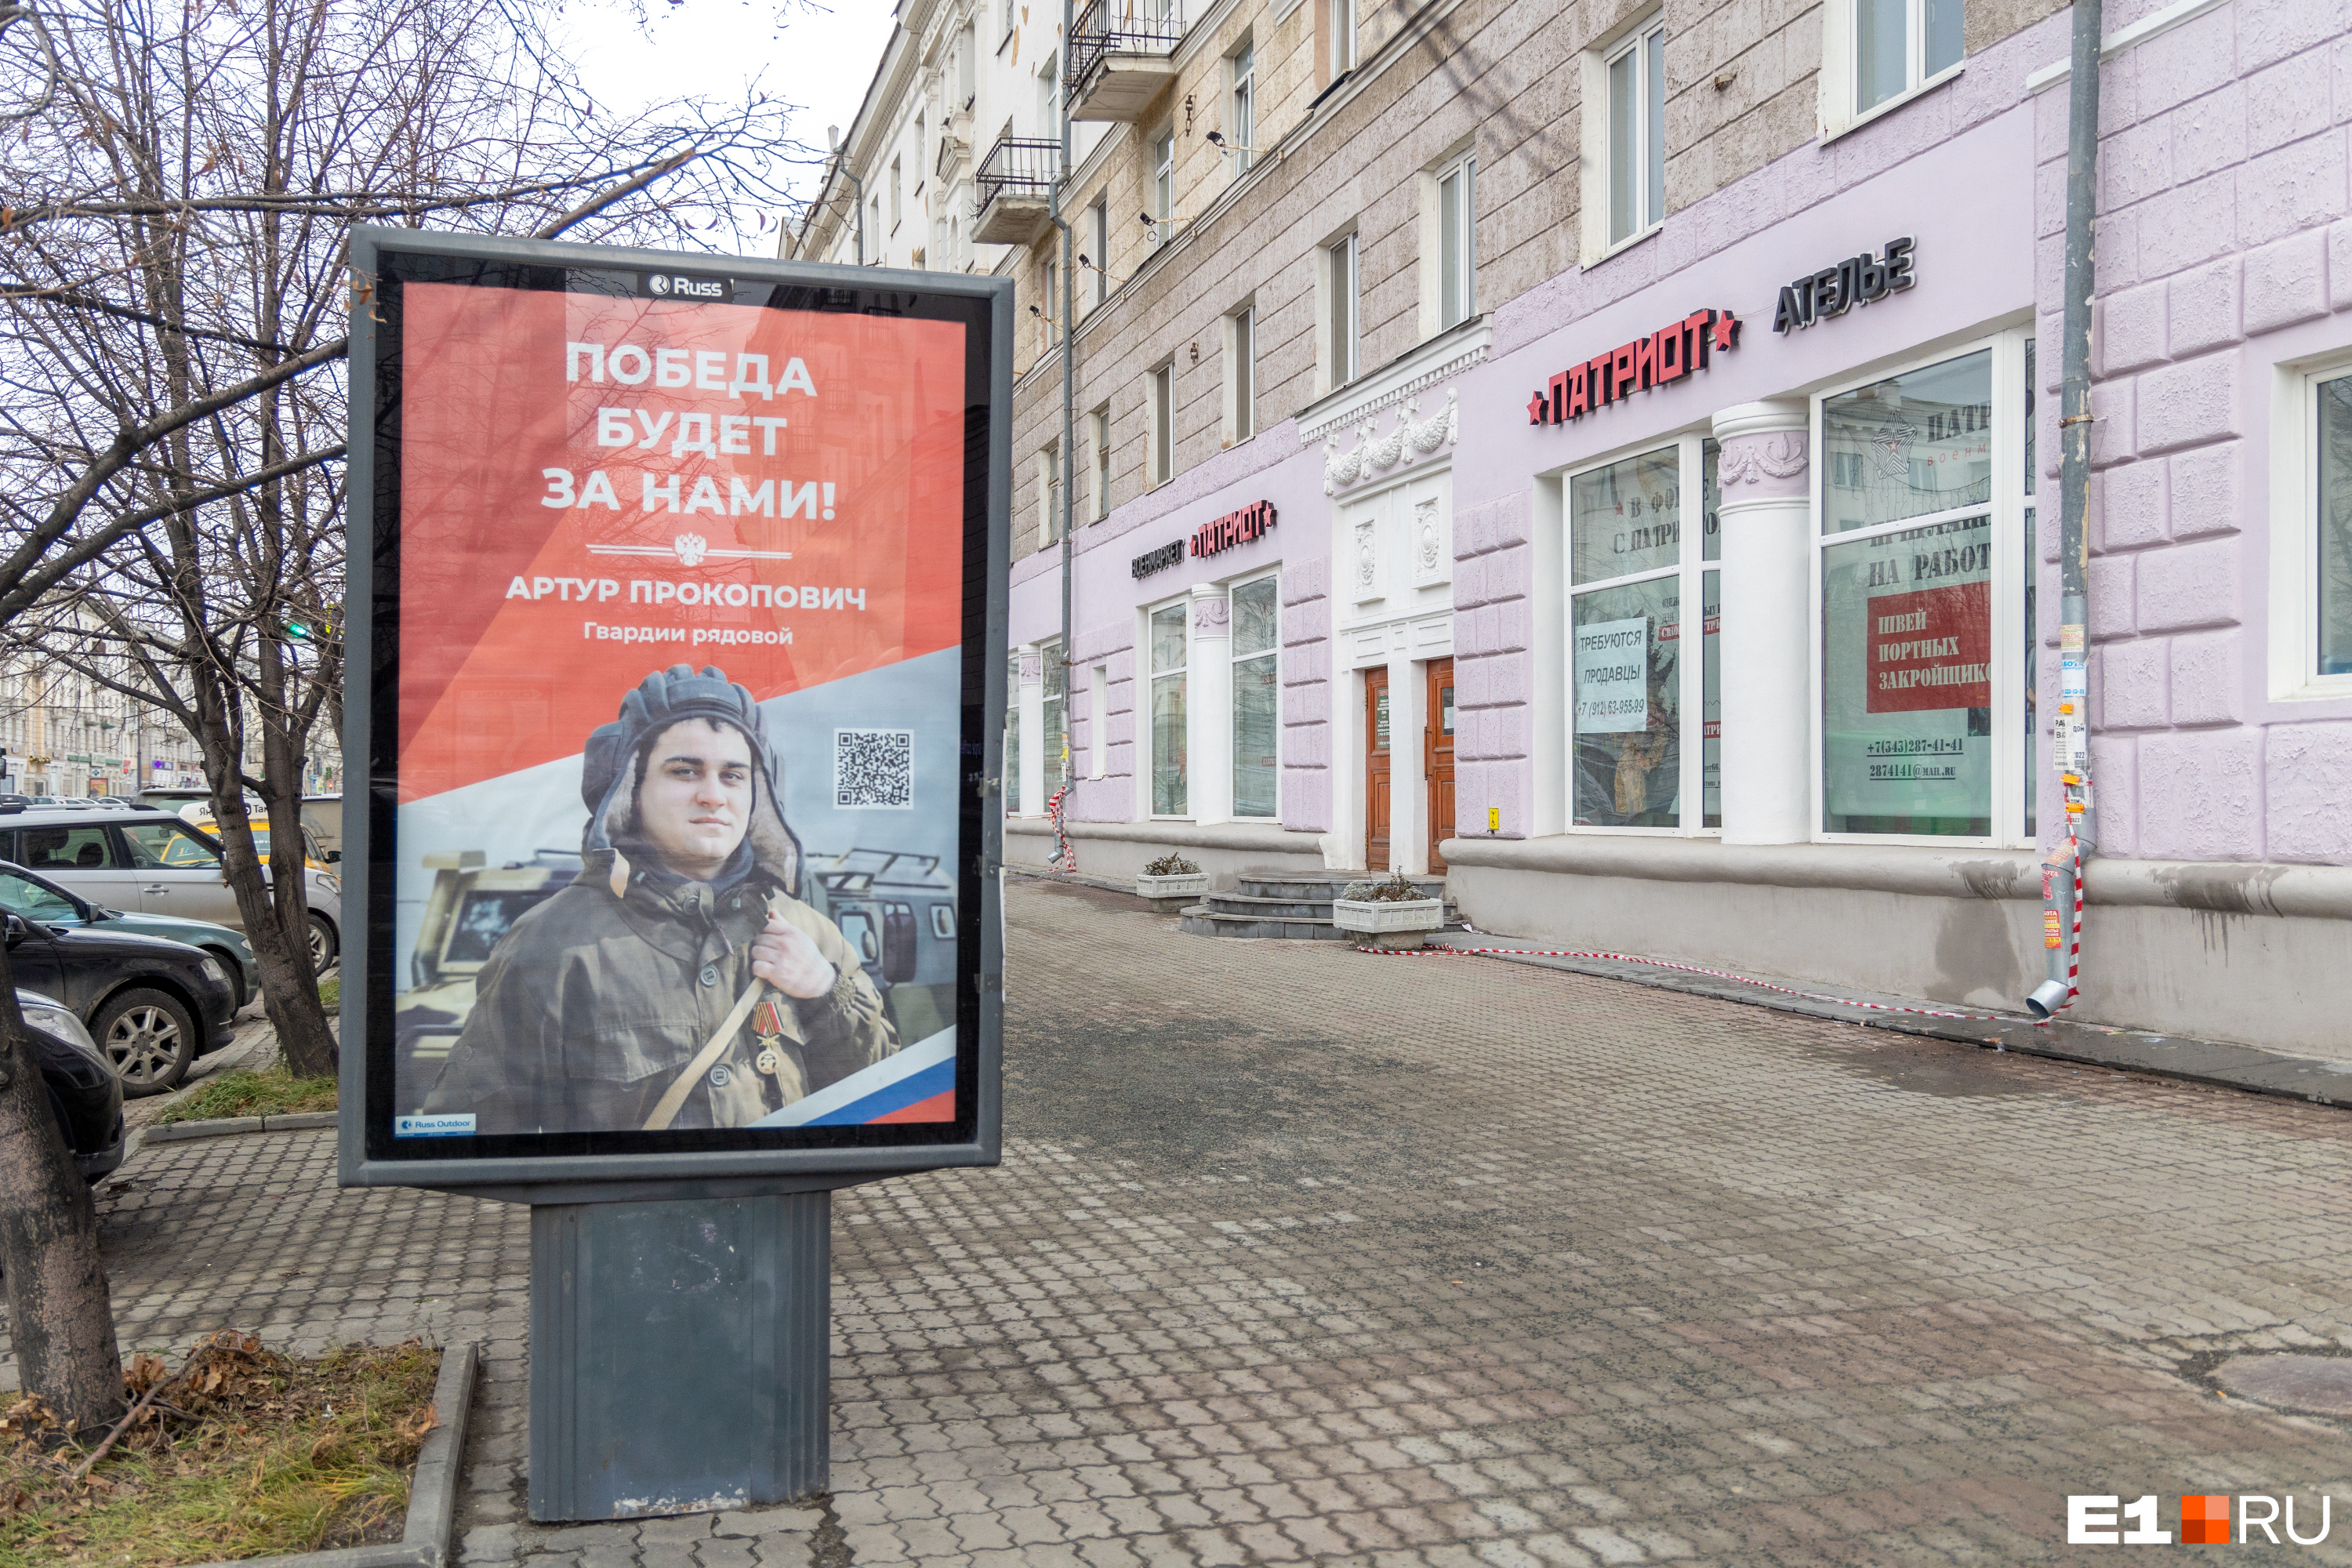 Главная шубная улица Екатеринбурга сменила статус. Салоны меха на Свердлова уступили место военторгам